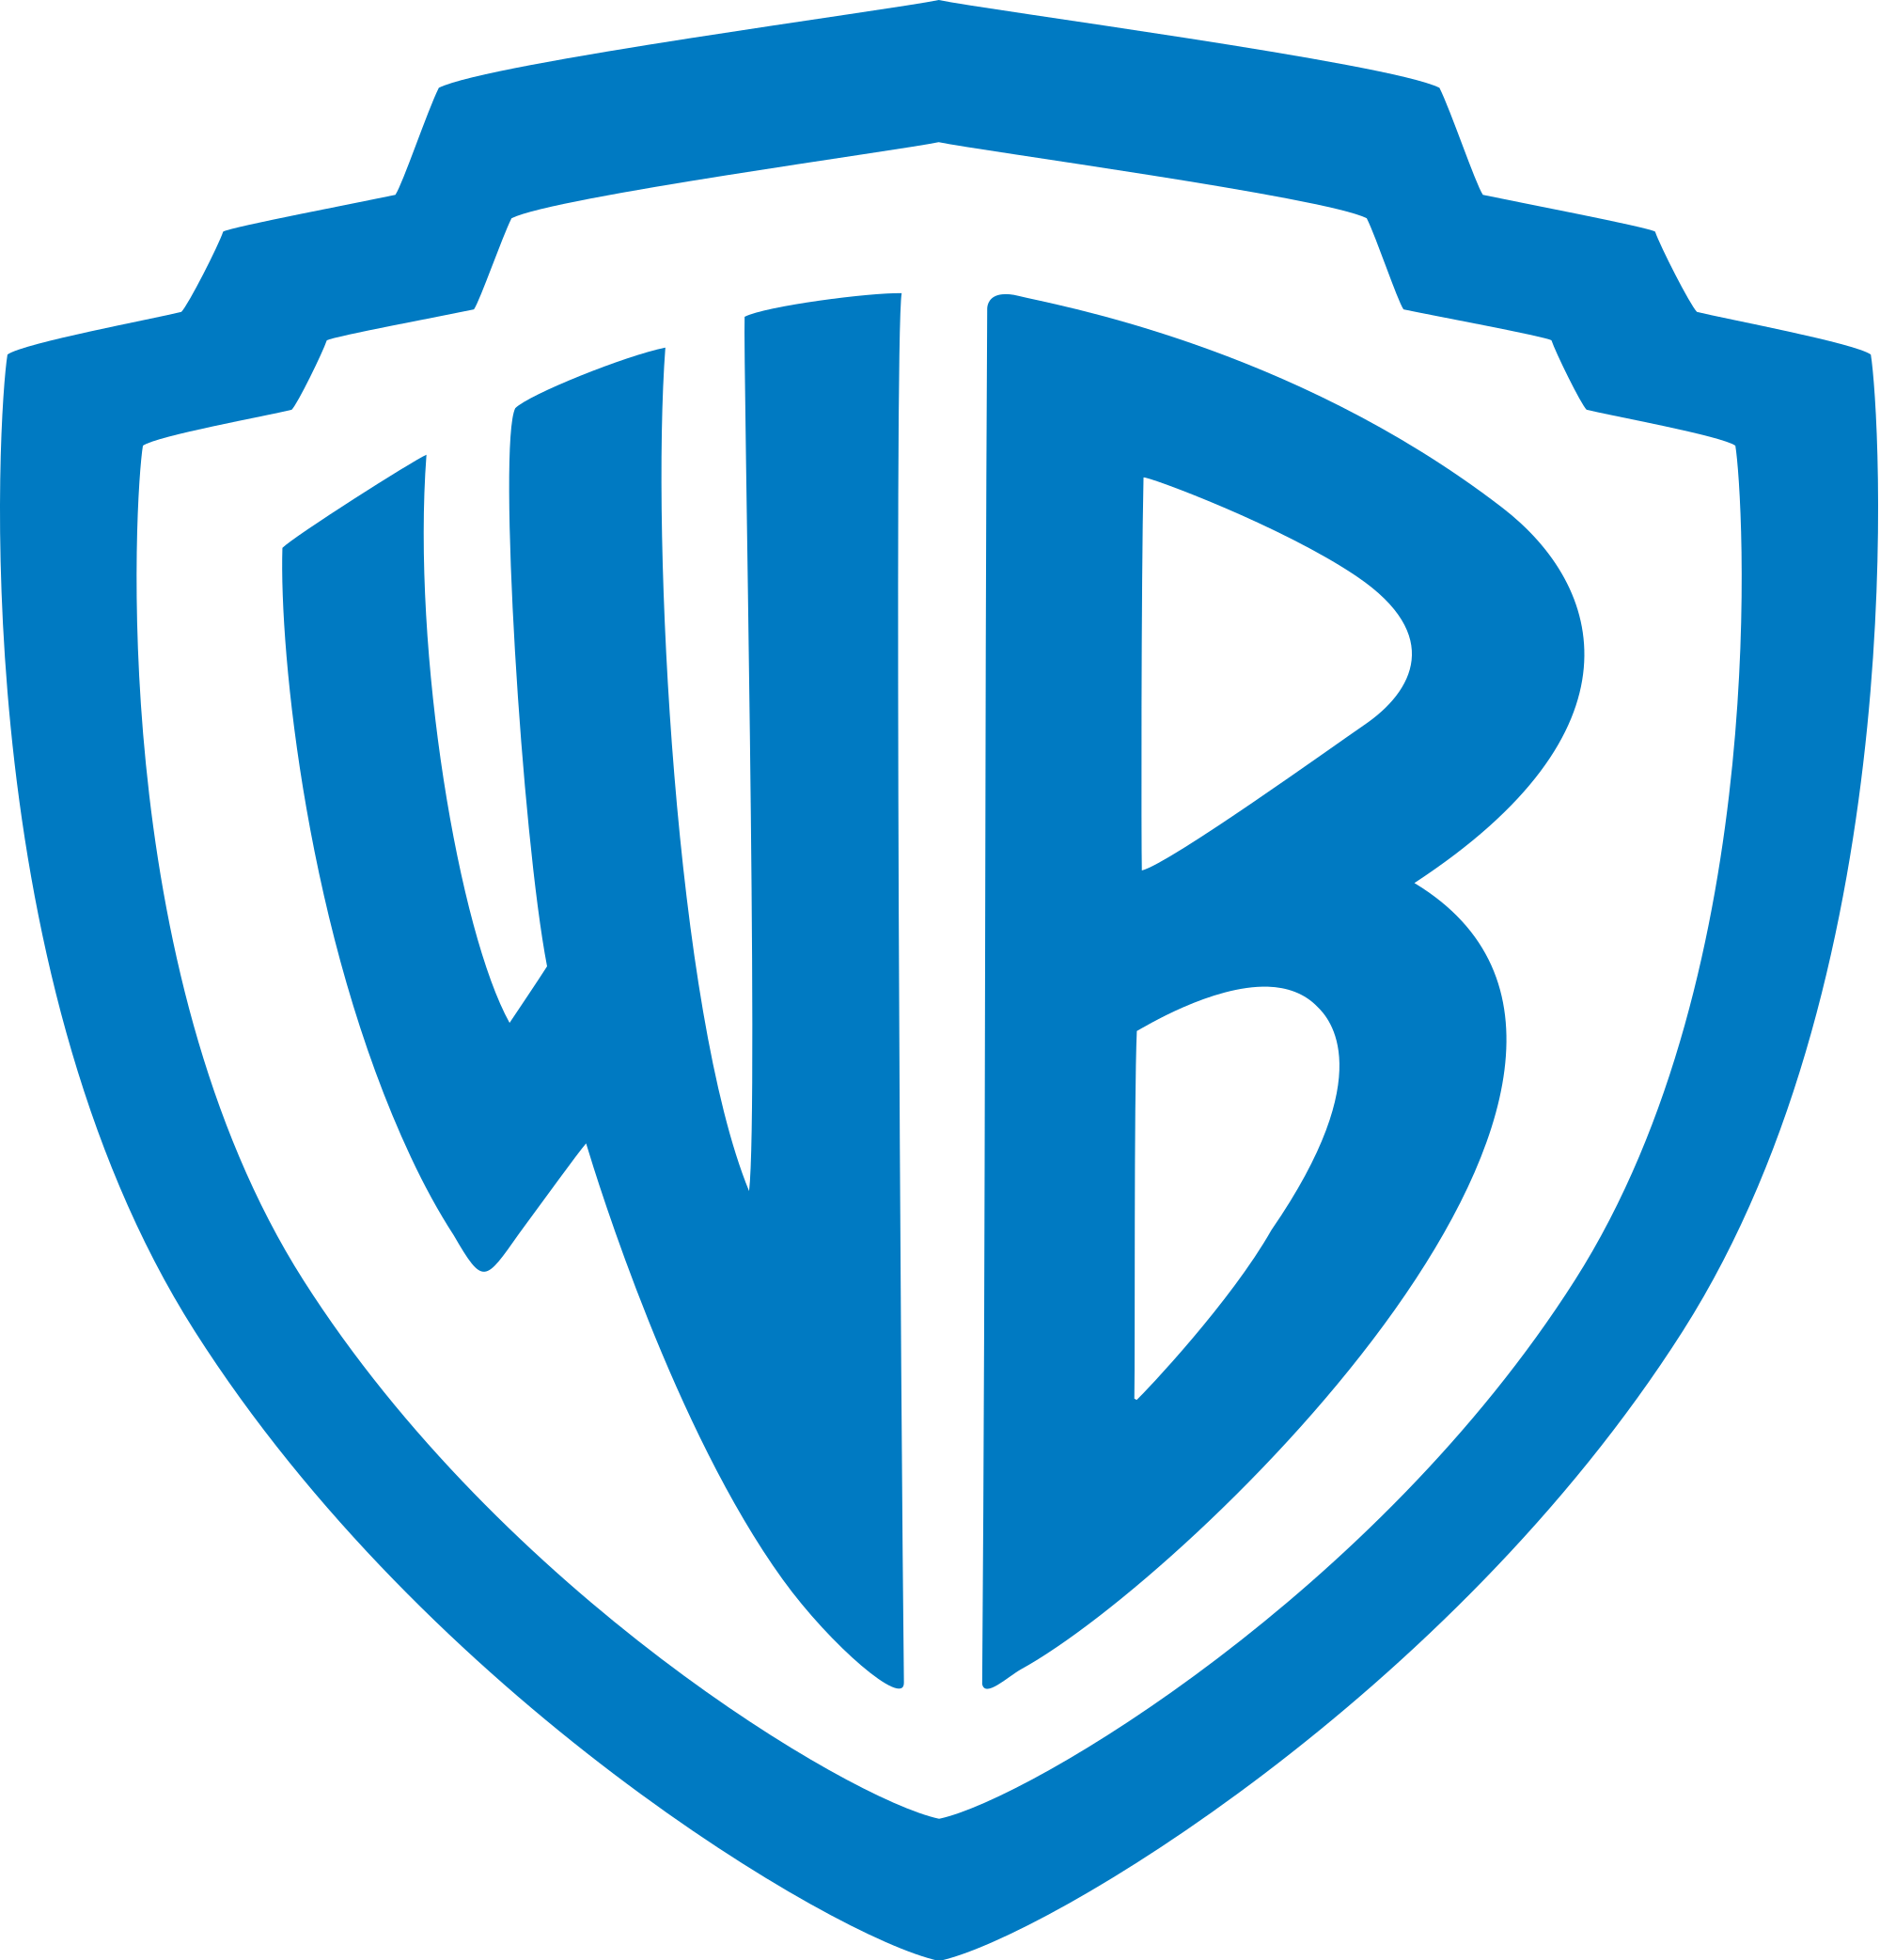 Logos/Warner Bros.png